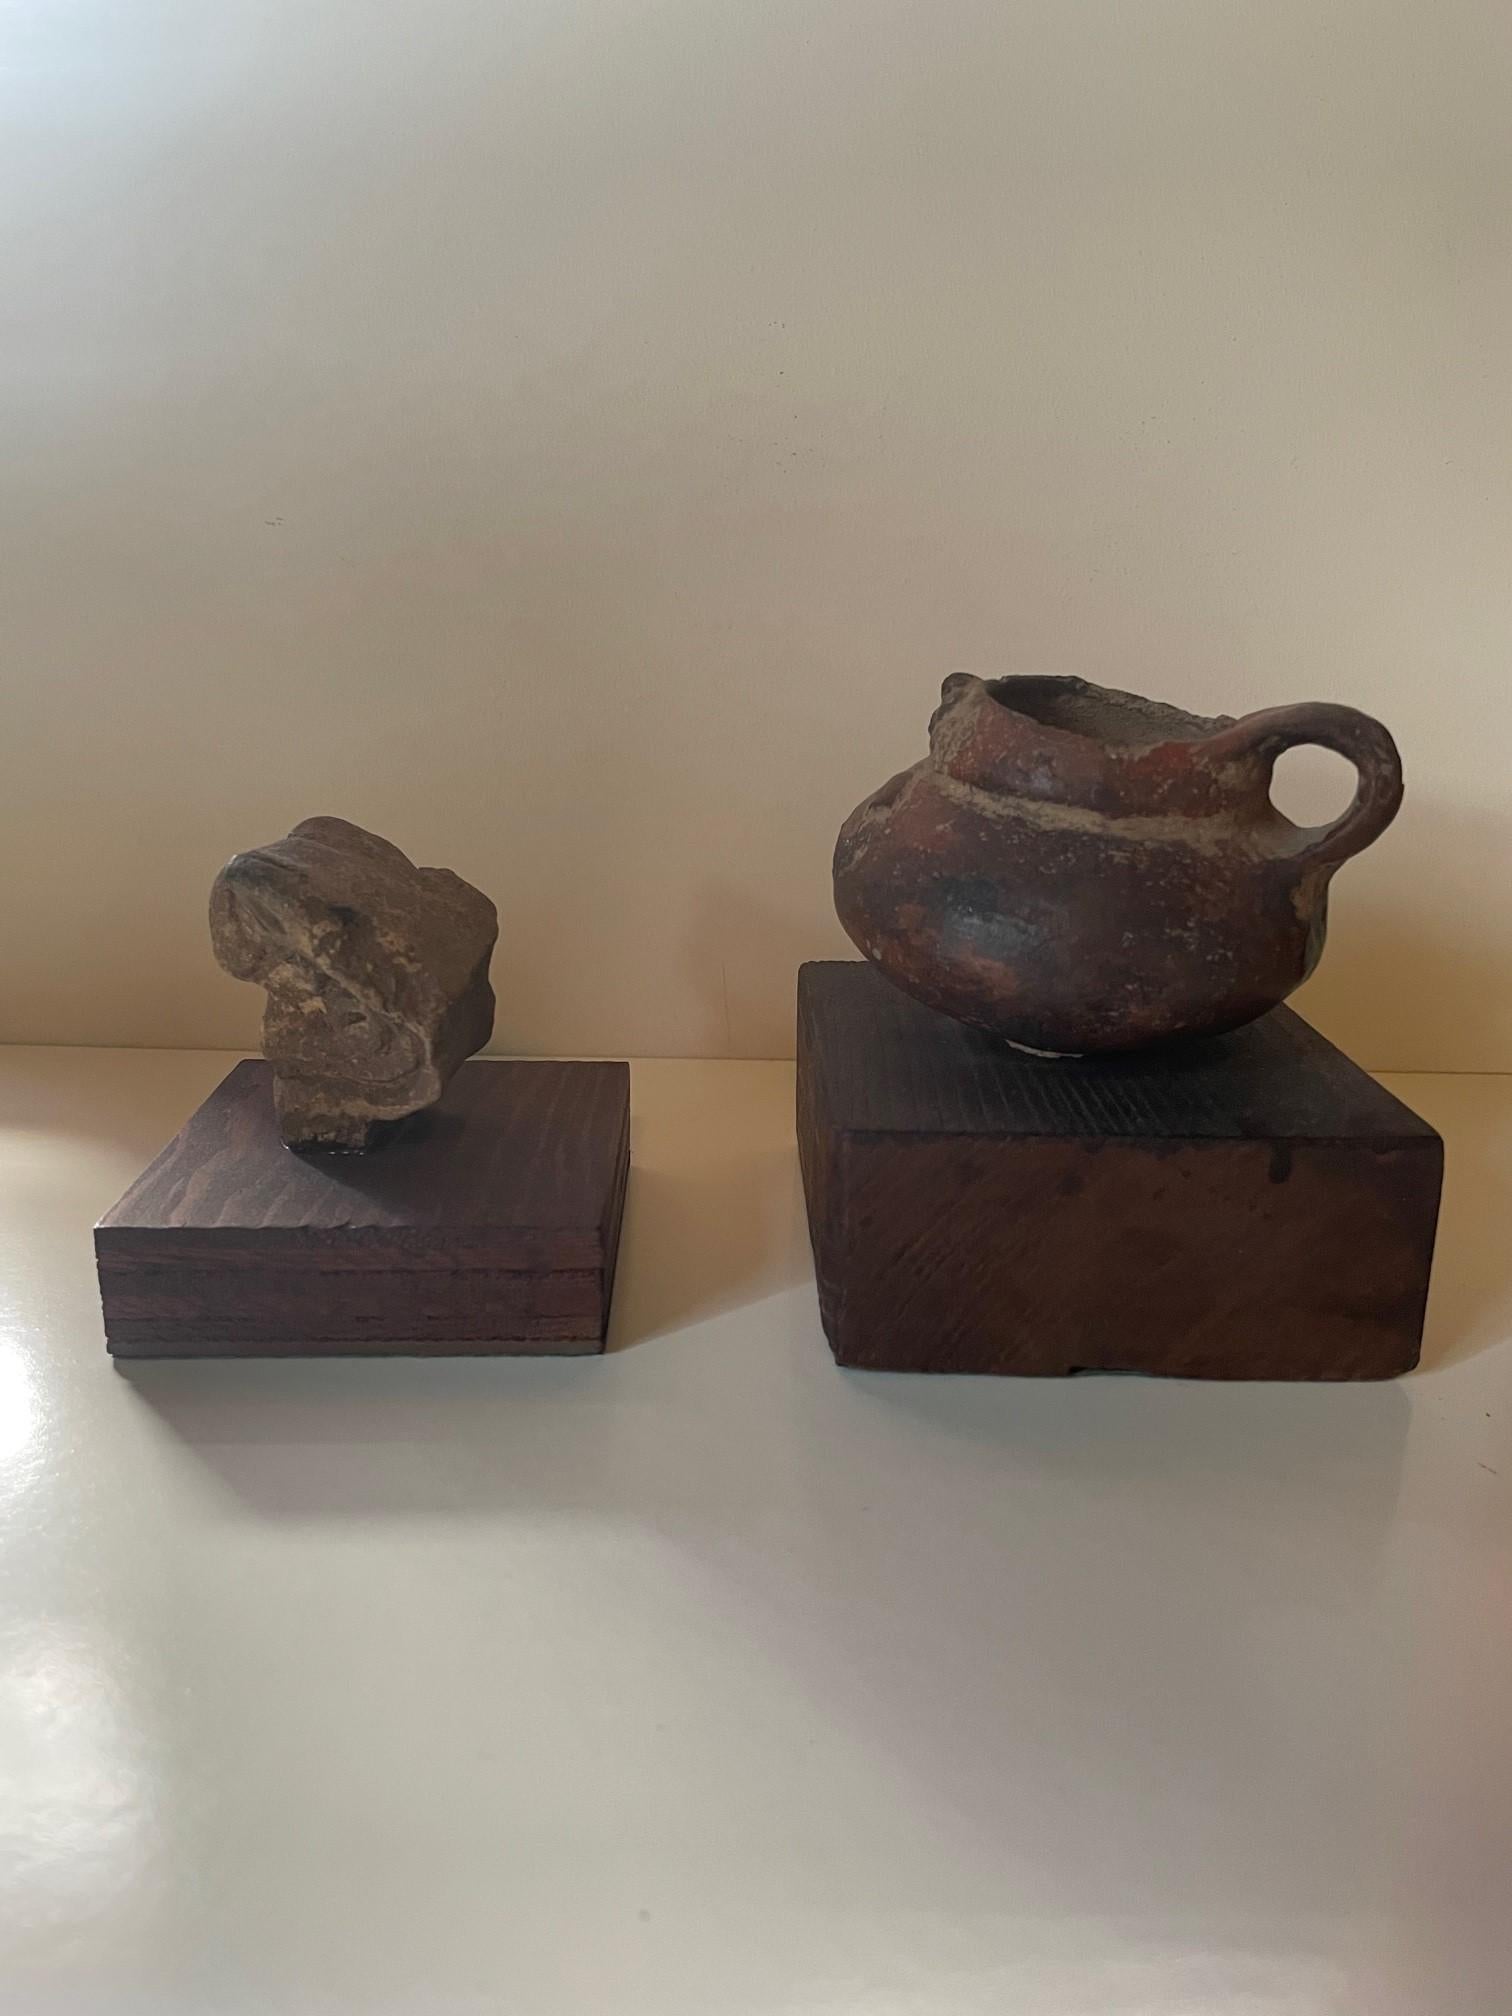 Magnifique ensemble de deux artefacts Pre-Columbian en forme d'oiseaux.

Une pierre à tête d'oiseau finement sculptée montée sur une base en bois primitif, en état ancien sans cassure majeure. Monté avec ce qui semble être une résine ou de l'époxy